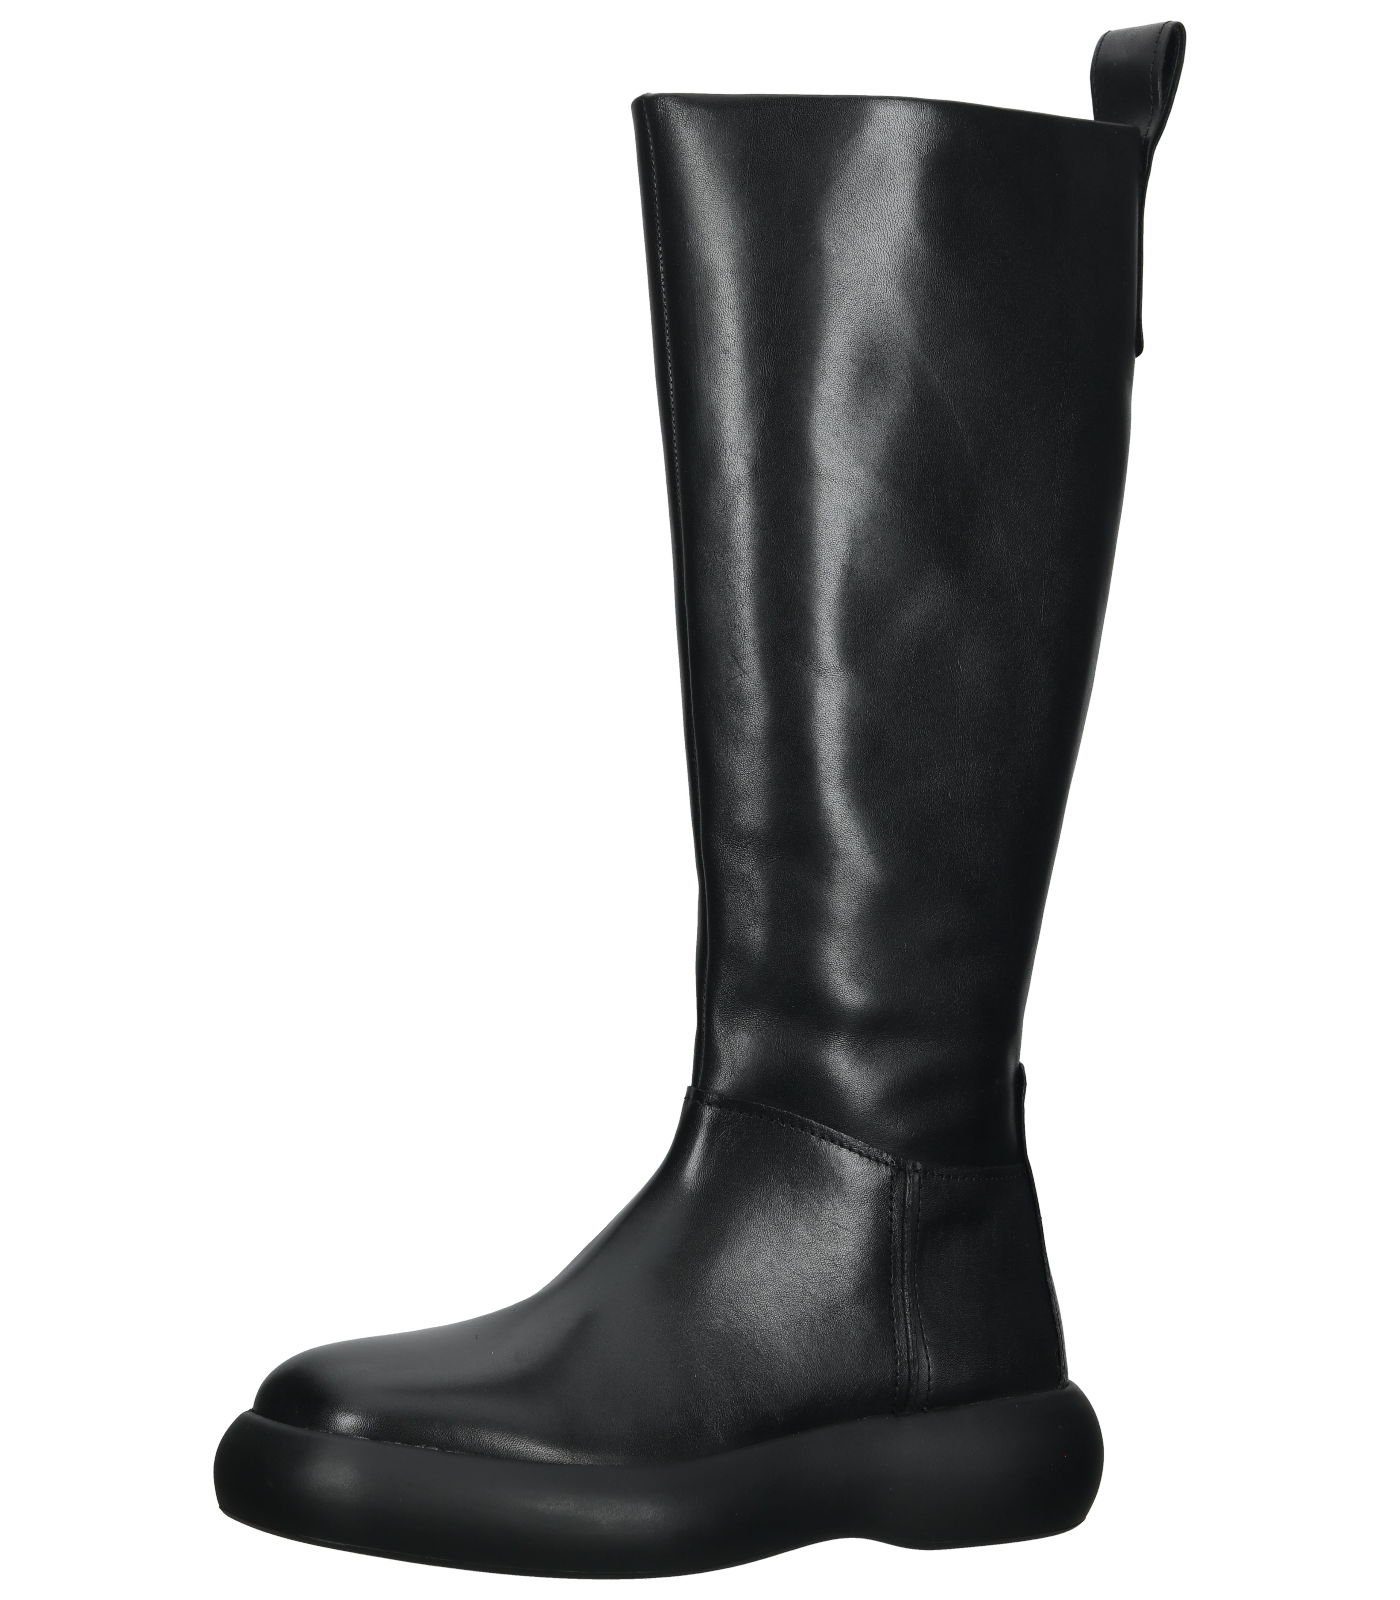 Vagabond »Stiefel Leder« Stiefel, Absatzhöhe: 4 cm online kaufen | OTTO